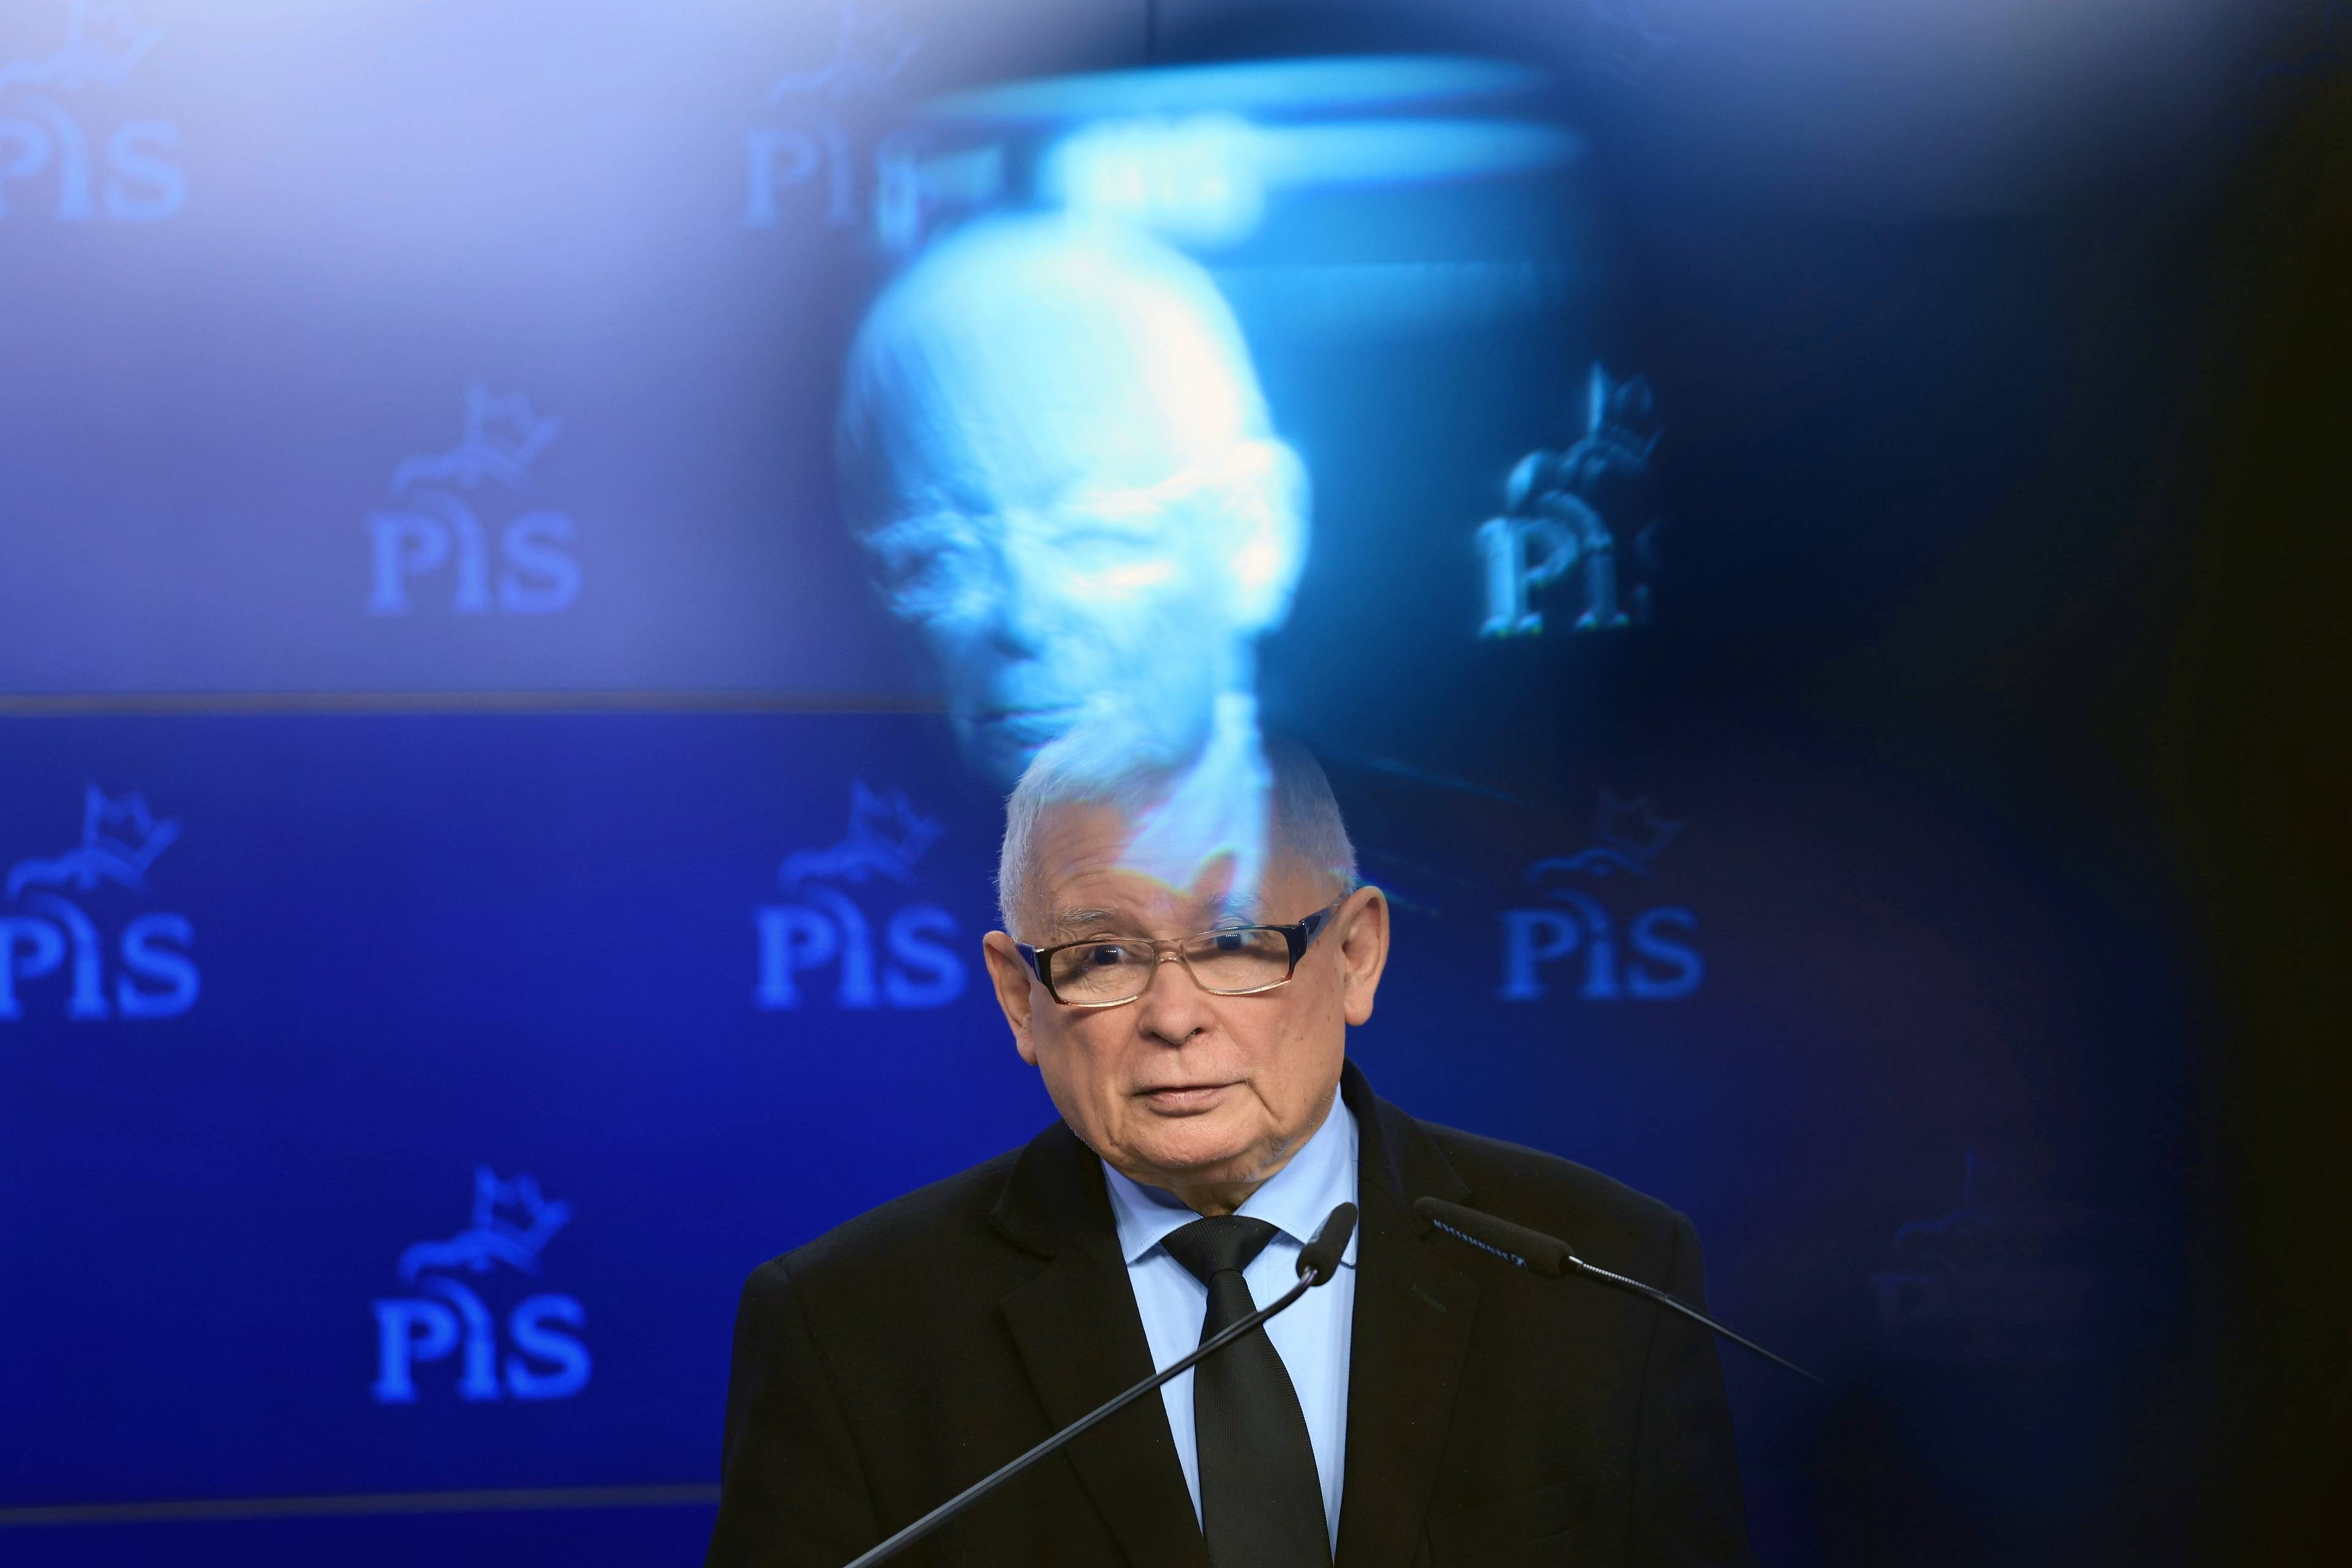 Jarosław Kaczyński przemawia, w tle ściana z logo PiS, nad politykiem efekt fotograficzny negatywu jego twarzy